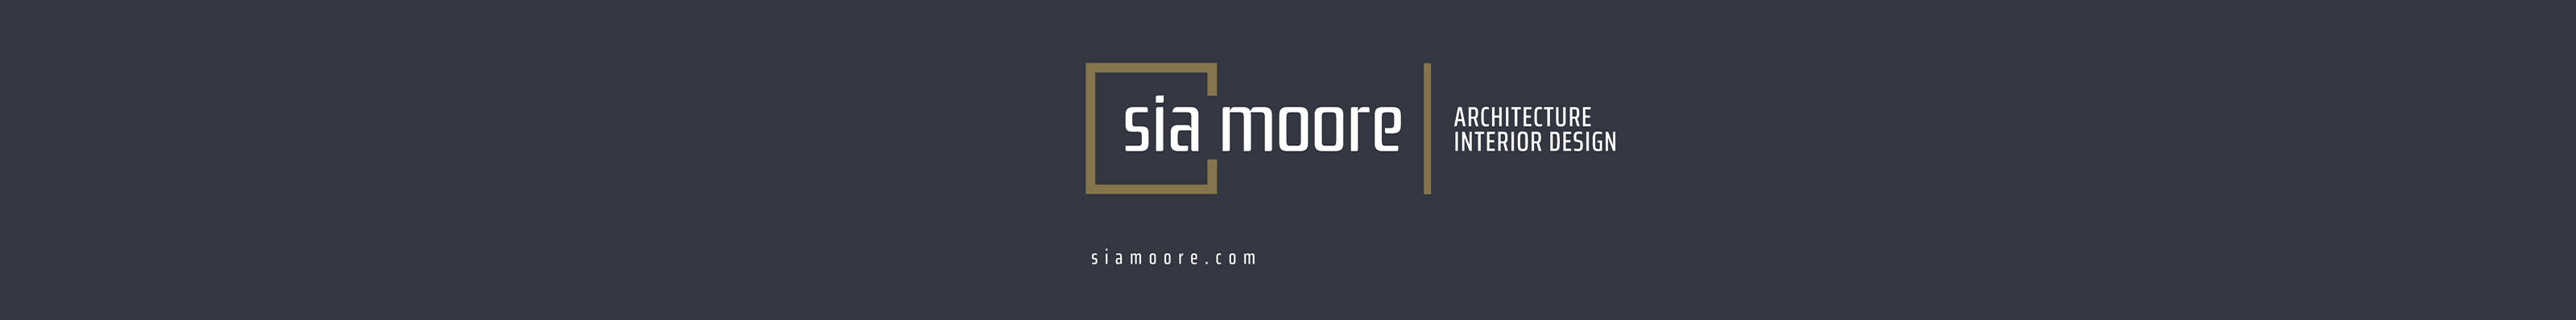 Sia Moore Architecture Interior Design's profile banner